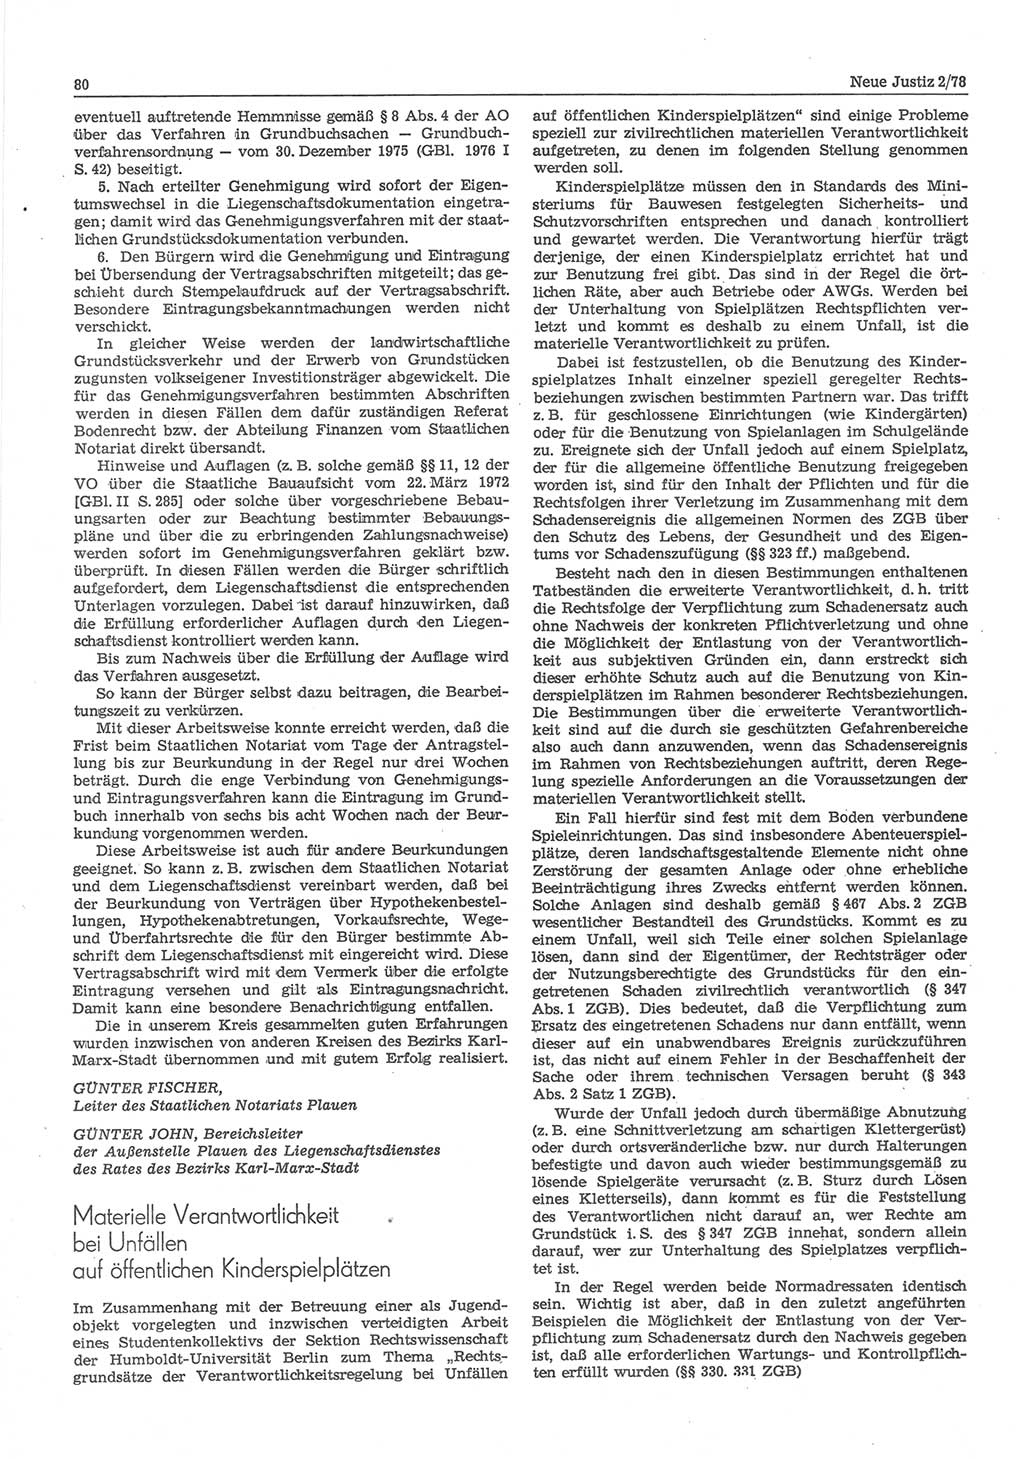 Neue Justiz (NJ), Zeitschrift für sozialistisches Recht und Gesetzlichkeit [Deutsche Demokratische Republik (DDR)], 32. Jahrgang 1978, Seite 80 (NJ DDR 1978, S. 80)